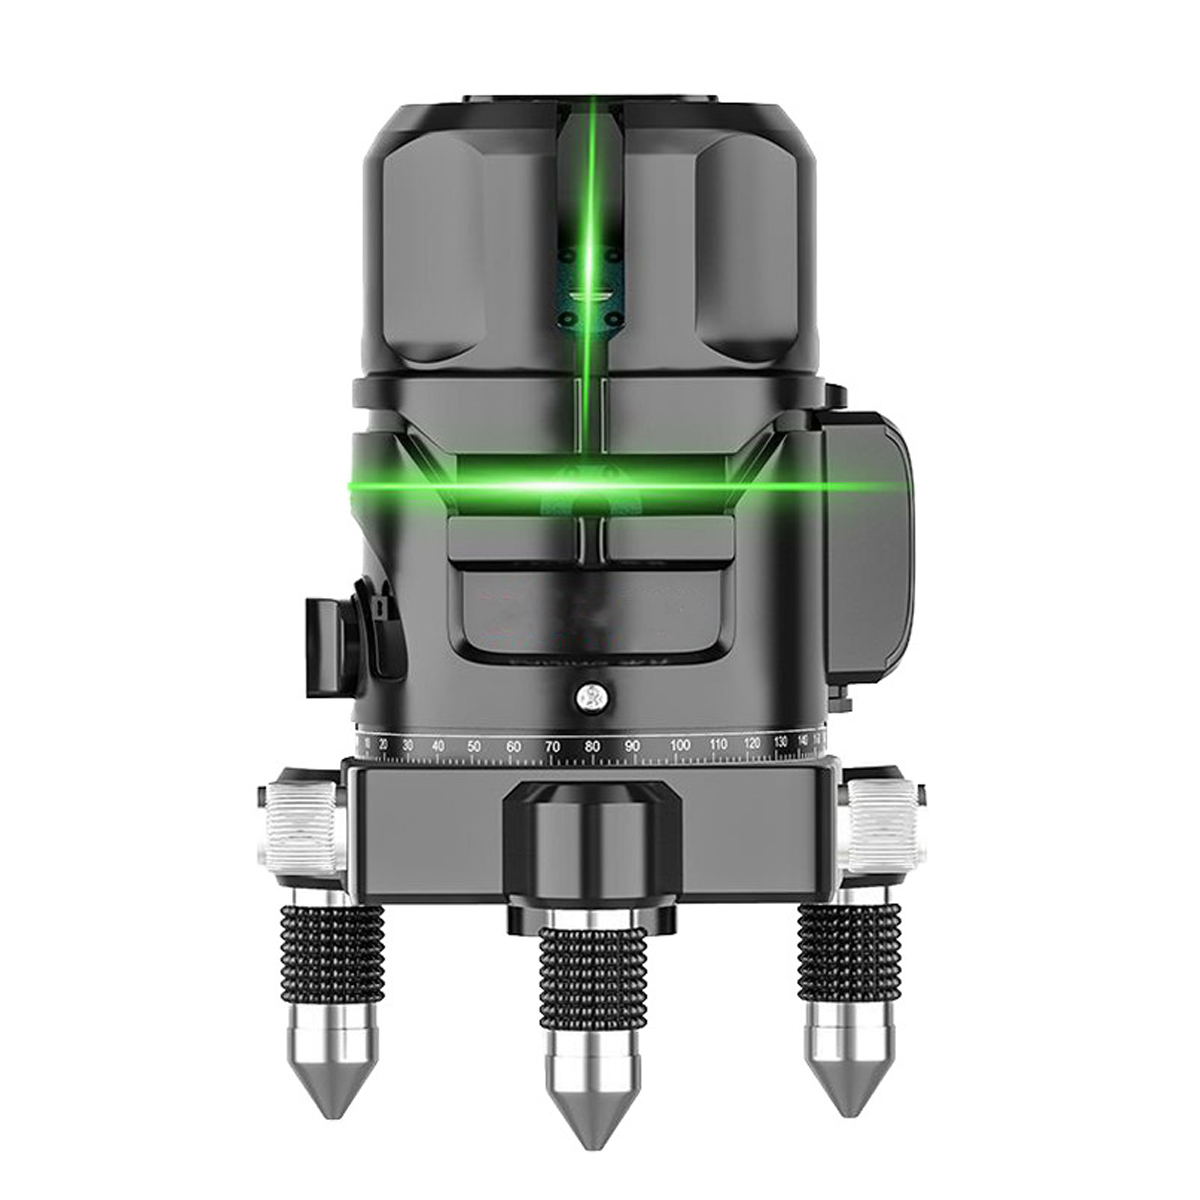 

5 Line Green Color Лазер Уровень Машины Горизонтальный Вертикальный Крест Измерения Инструмент